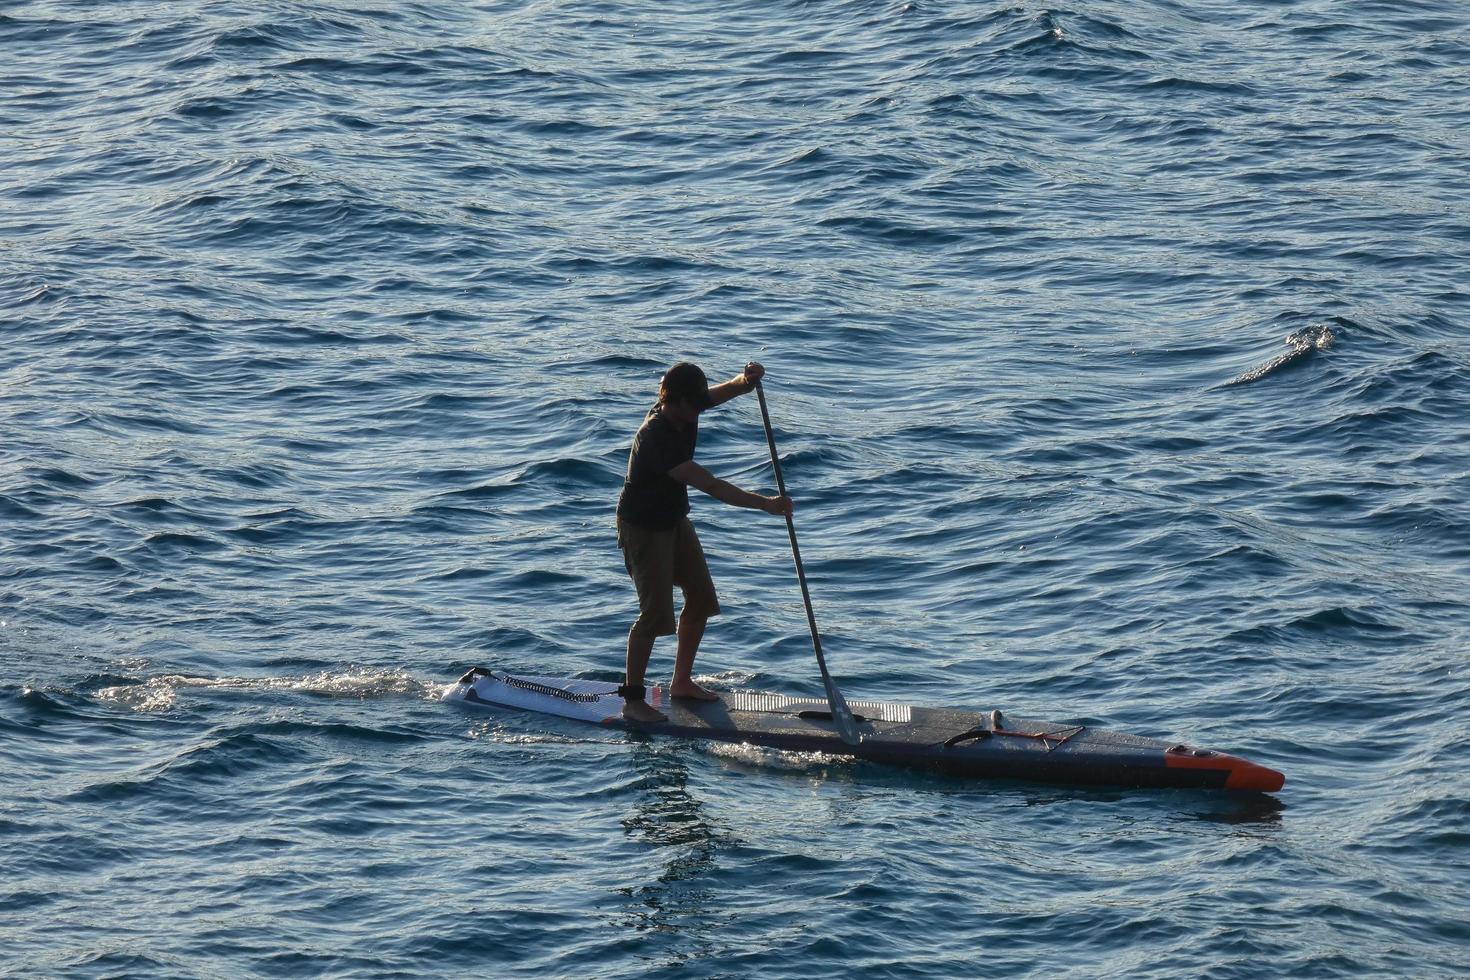 zwemmer Aan vakantie peddelen surfing in de middellandse Zee zee foto